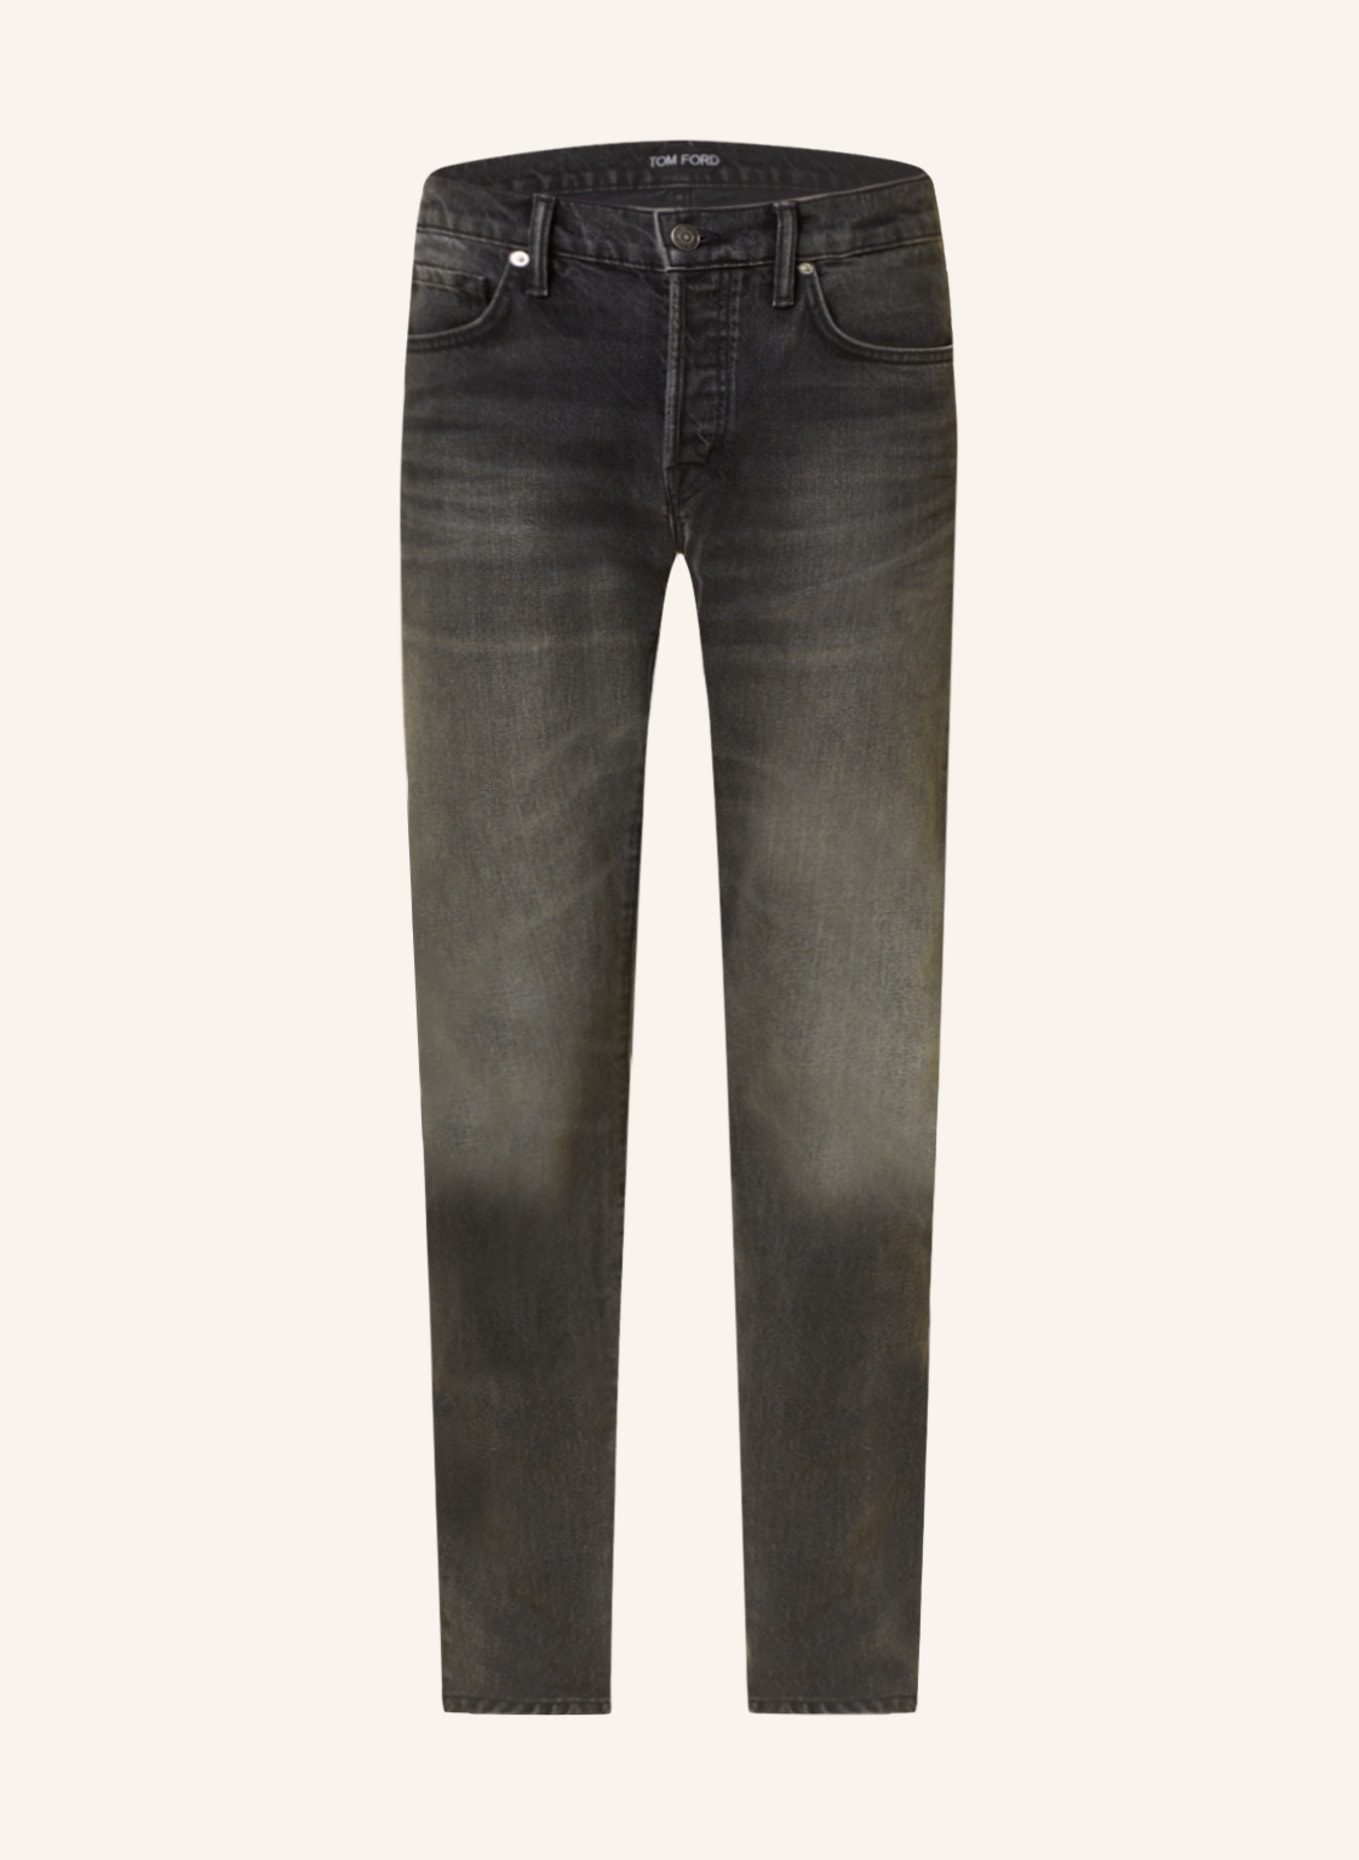 TOM FORD Jeans Slim Fit, Farbe: LB998 Special Black (Bild 1)